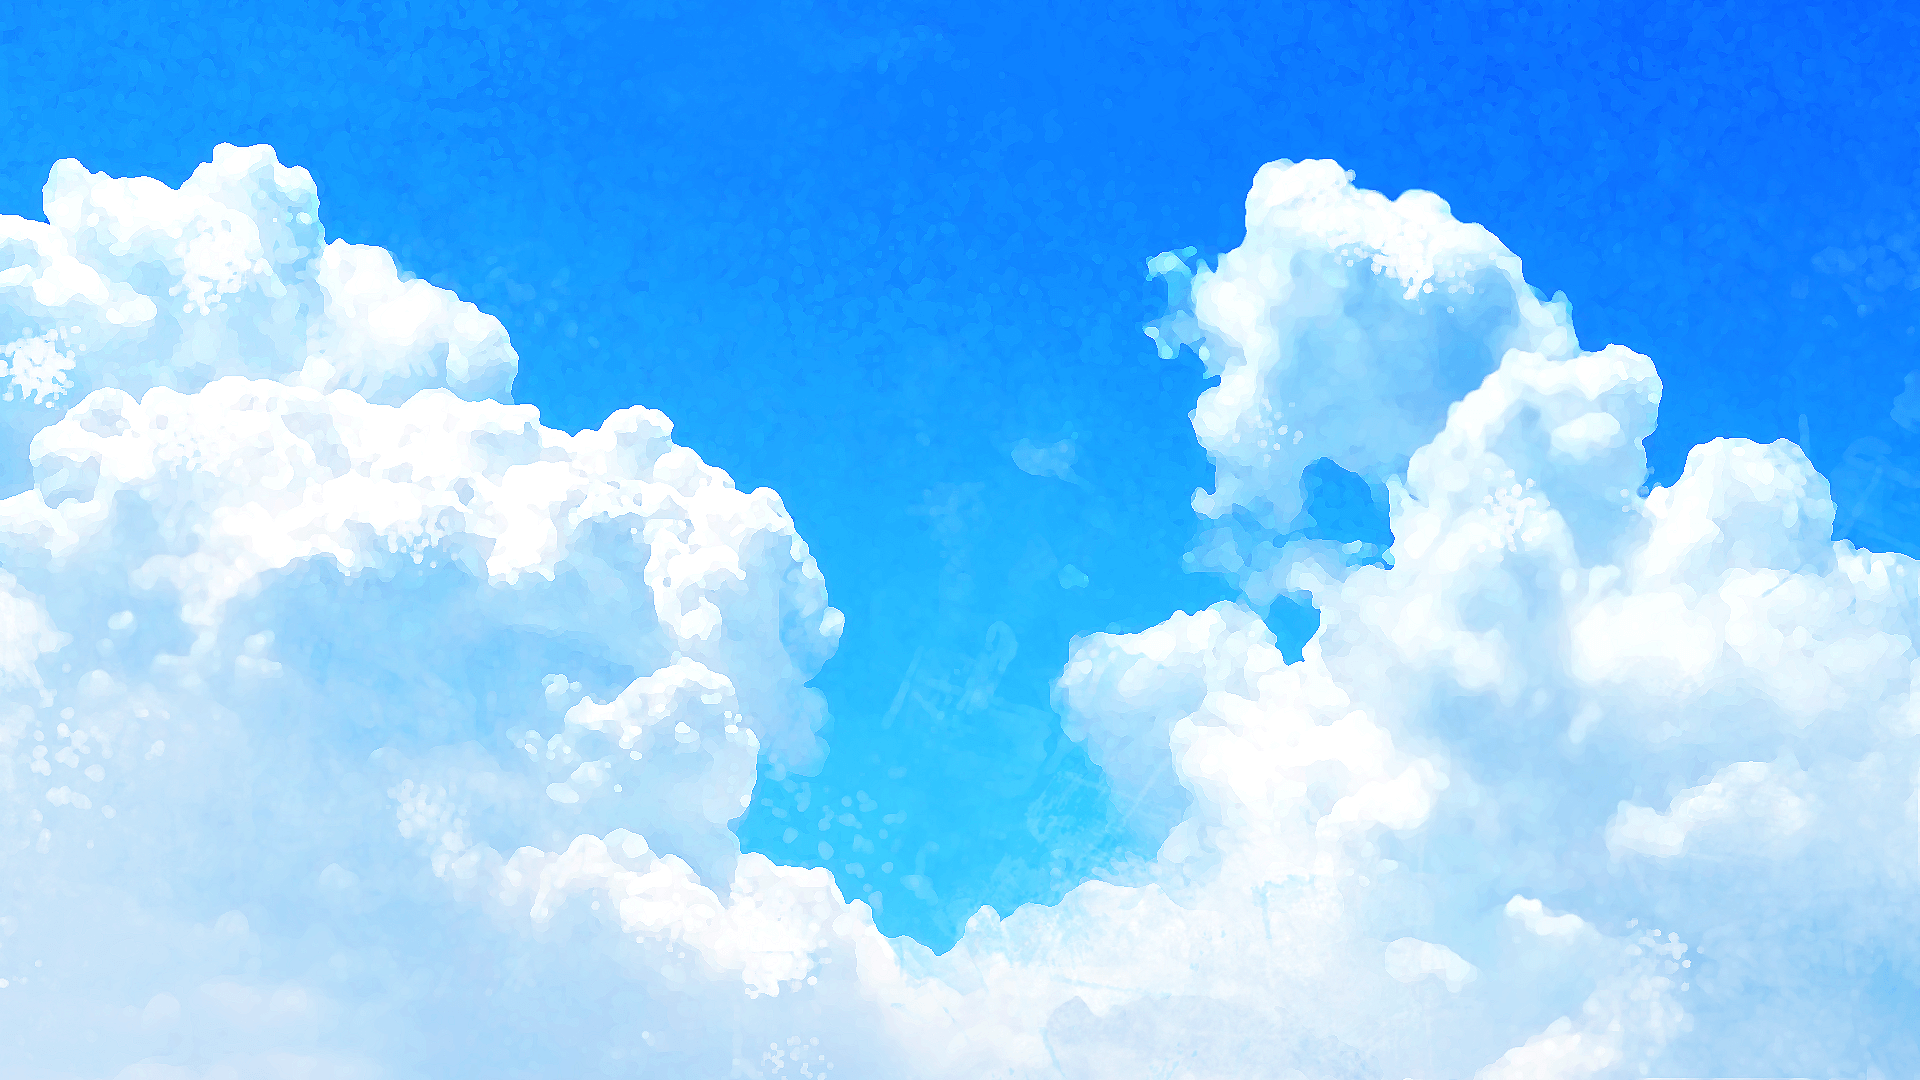 Okumono 背景 動画フリー素材 New 入道雲の背景 4種 T Co Jr1kfxbrg8 入道雲の広がる夏の青空の背景素材です 加工や色合い違いで4パターンご用意しました 暑い夏の日の背景にどうぞ Okumono フリー素材 Vtuber T Co